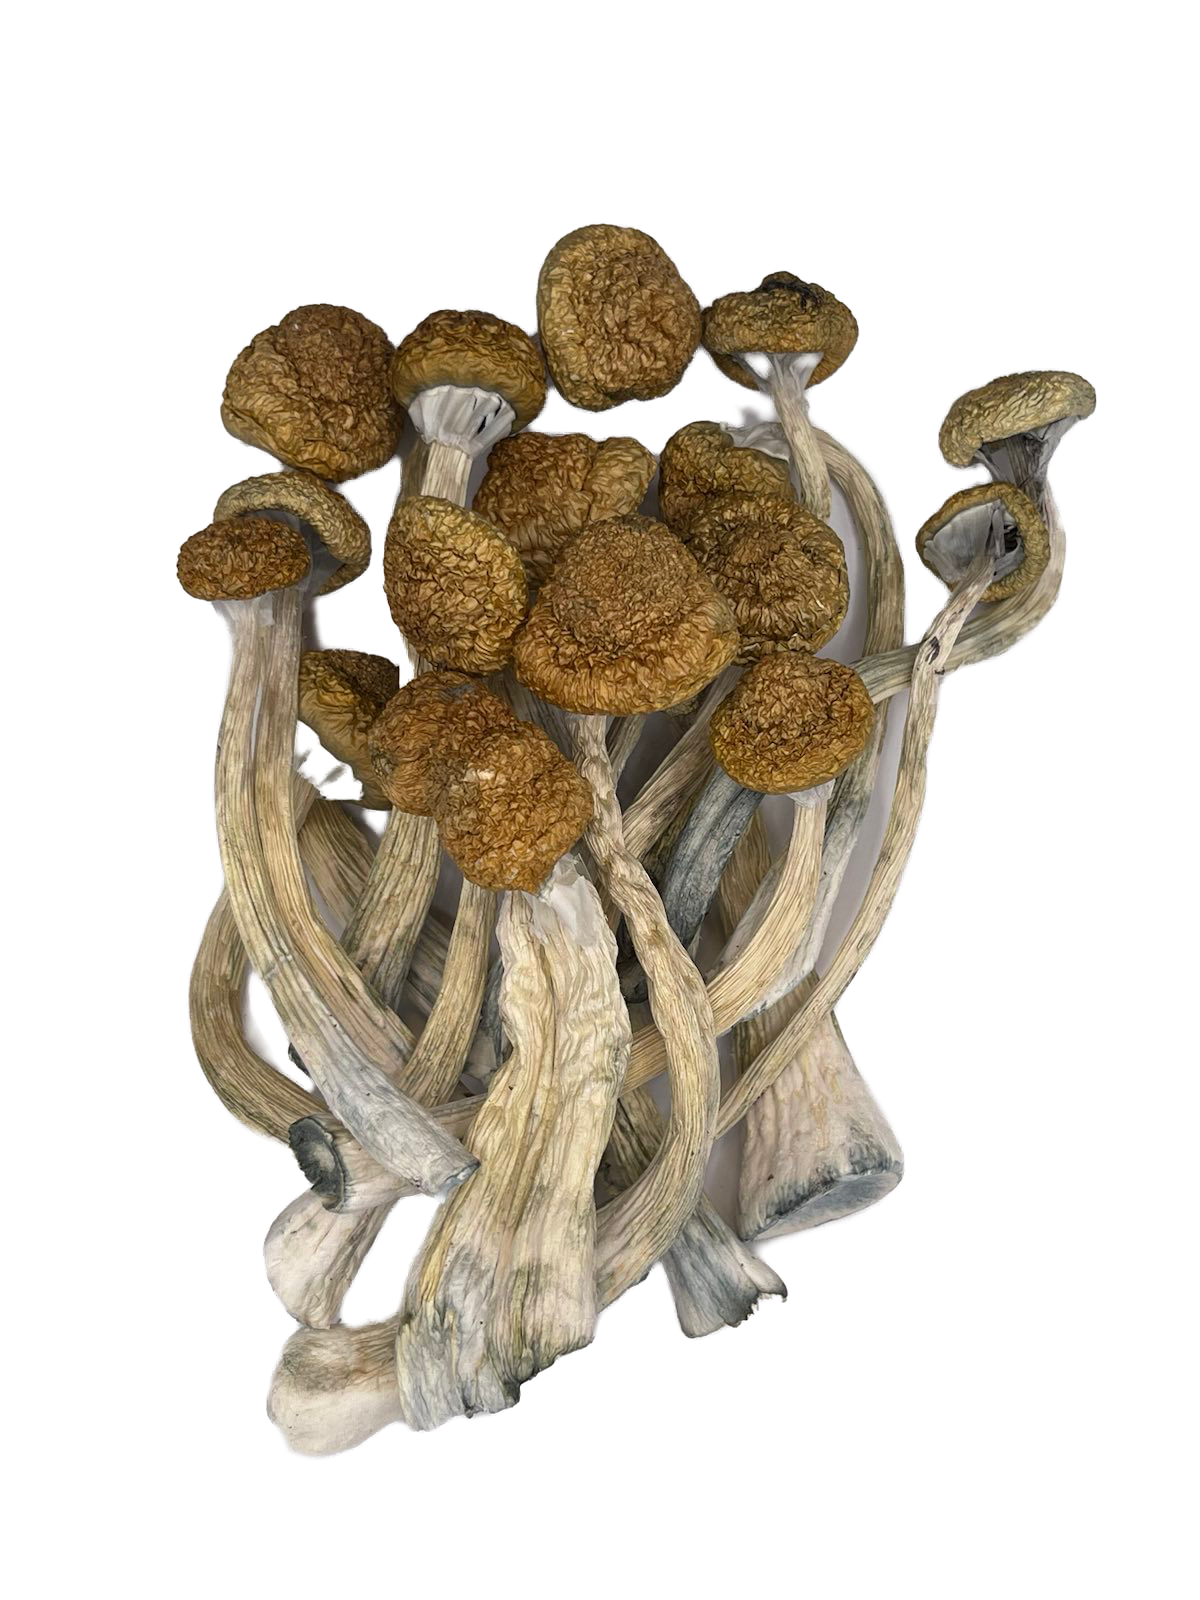 Dried Malabar Bunch of Mushrooms Love Magic Mushrooms